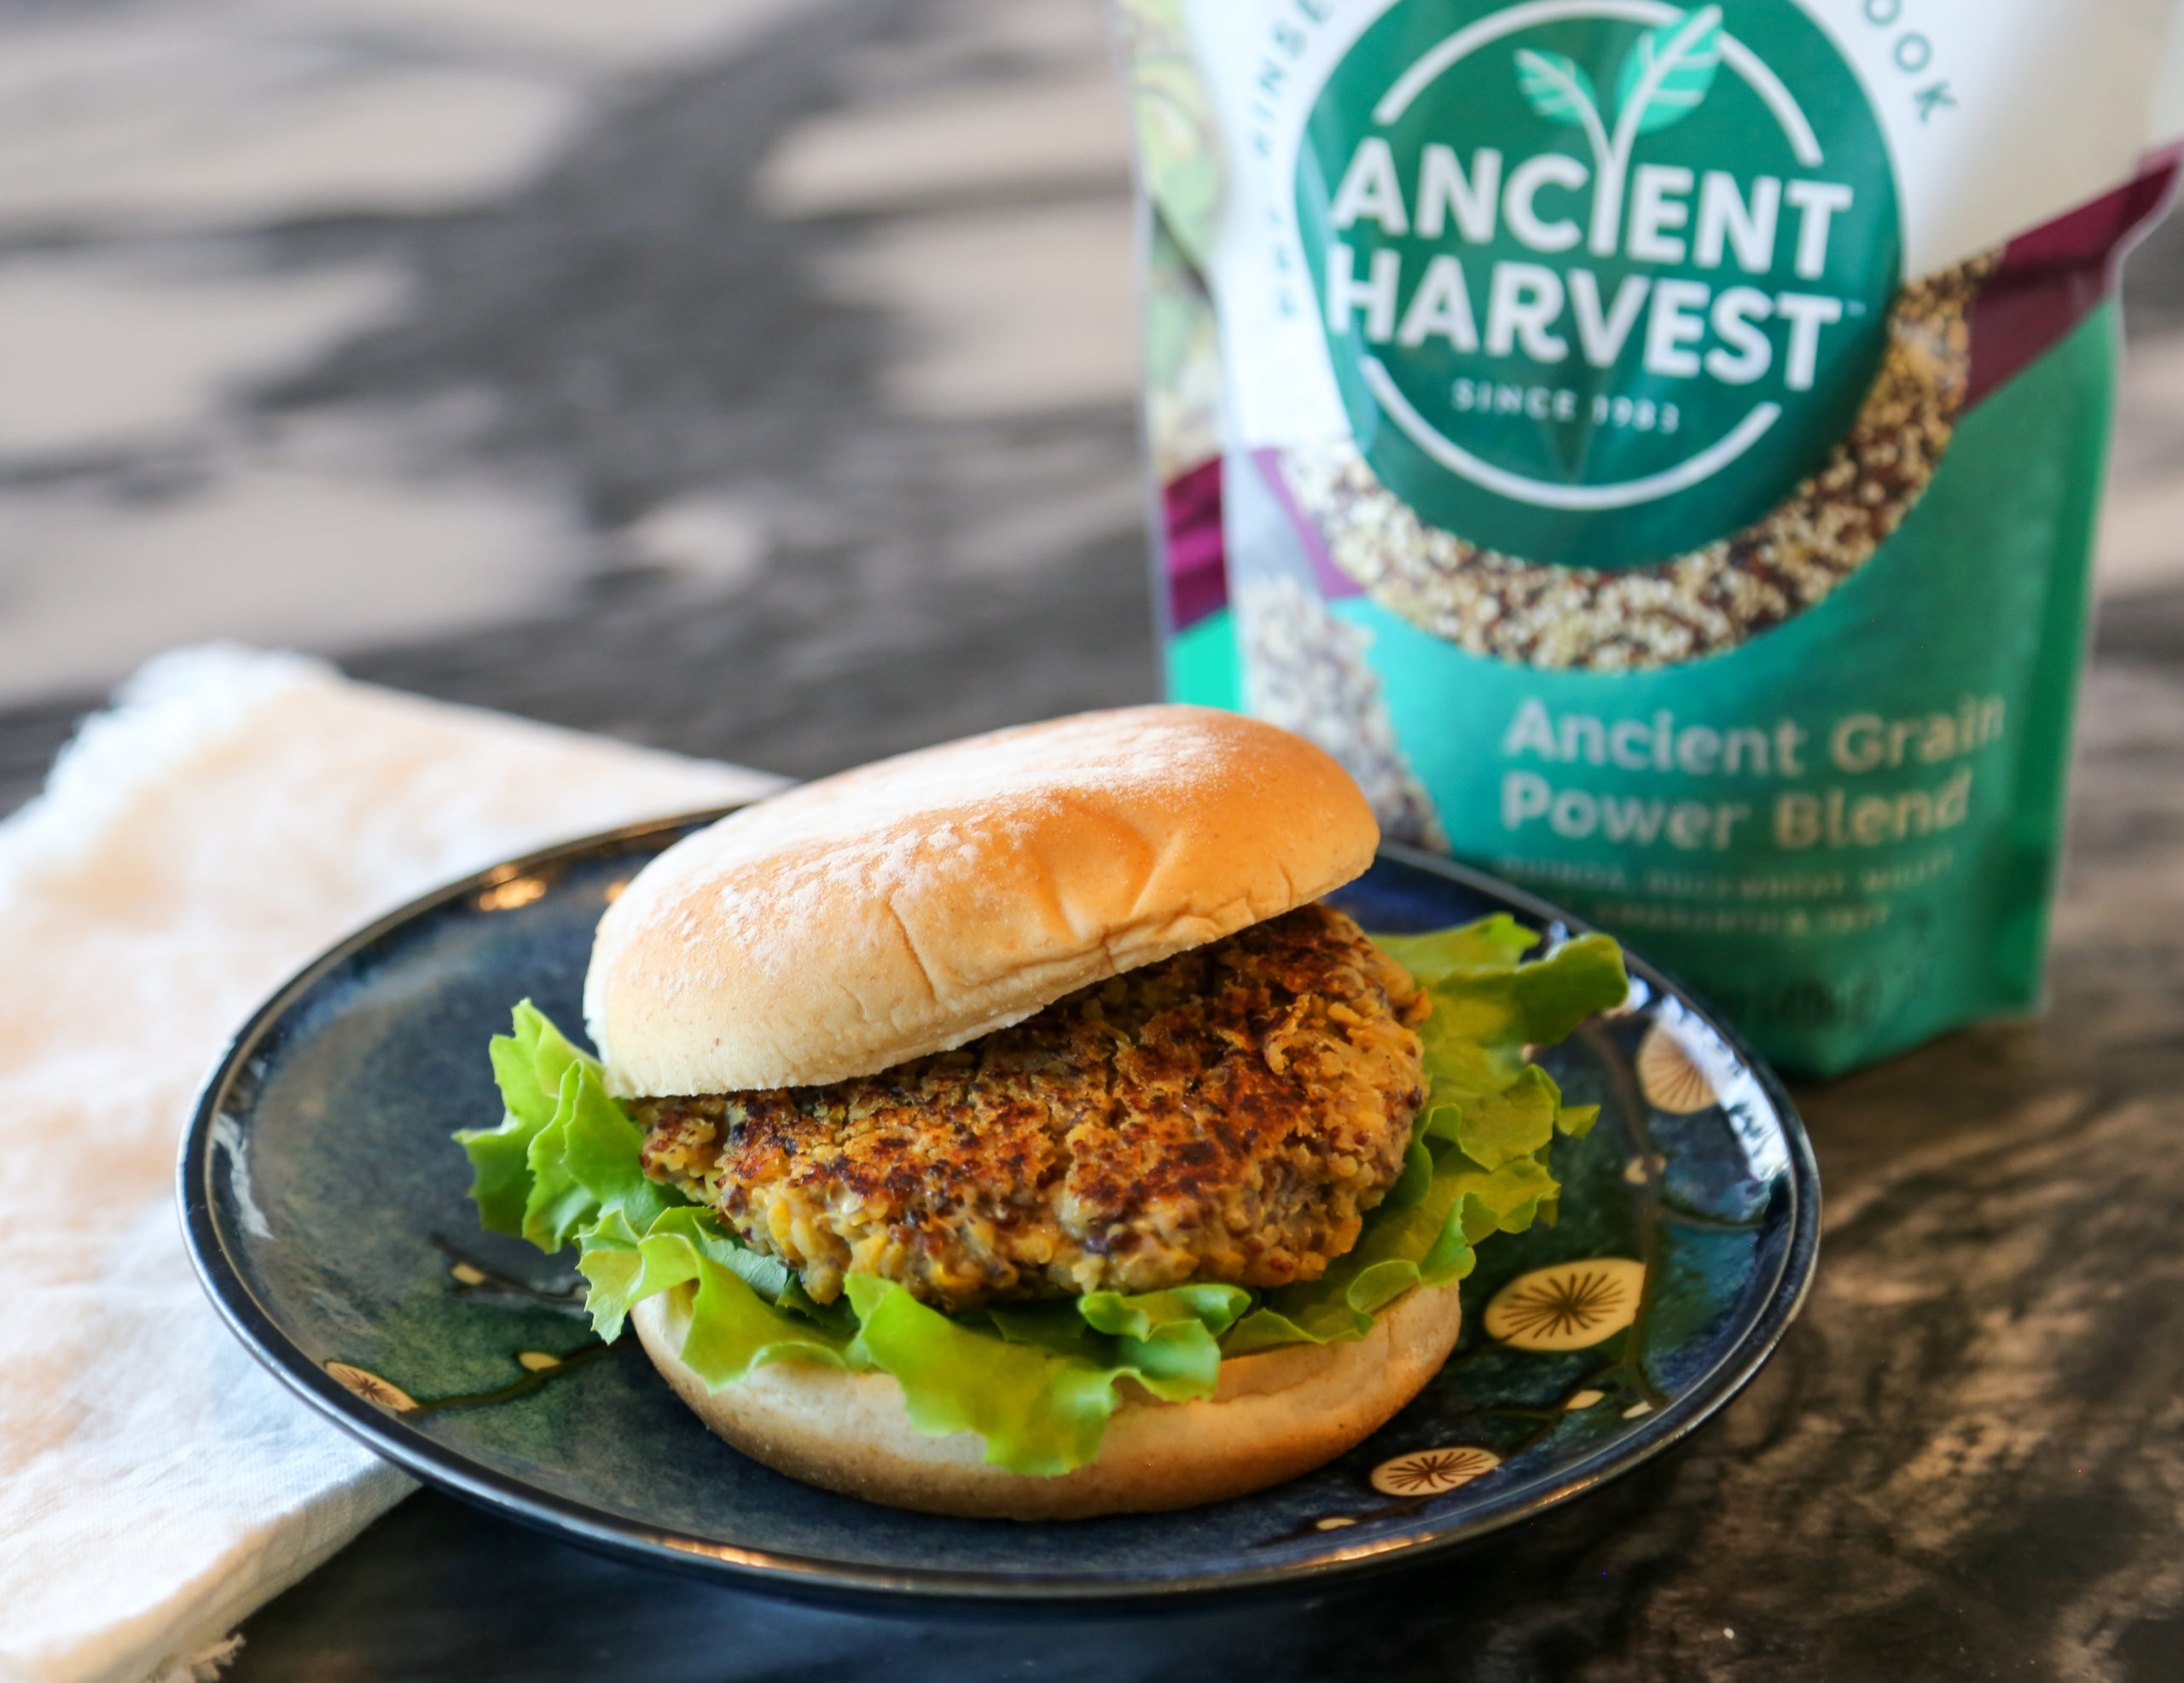 Black Bean Burger with Ancient Grain Power Blend - Ancient Harvest